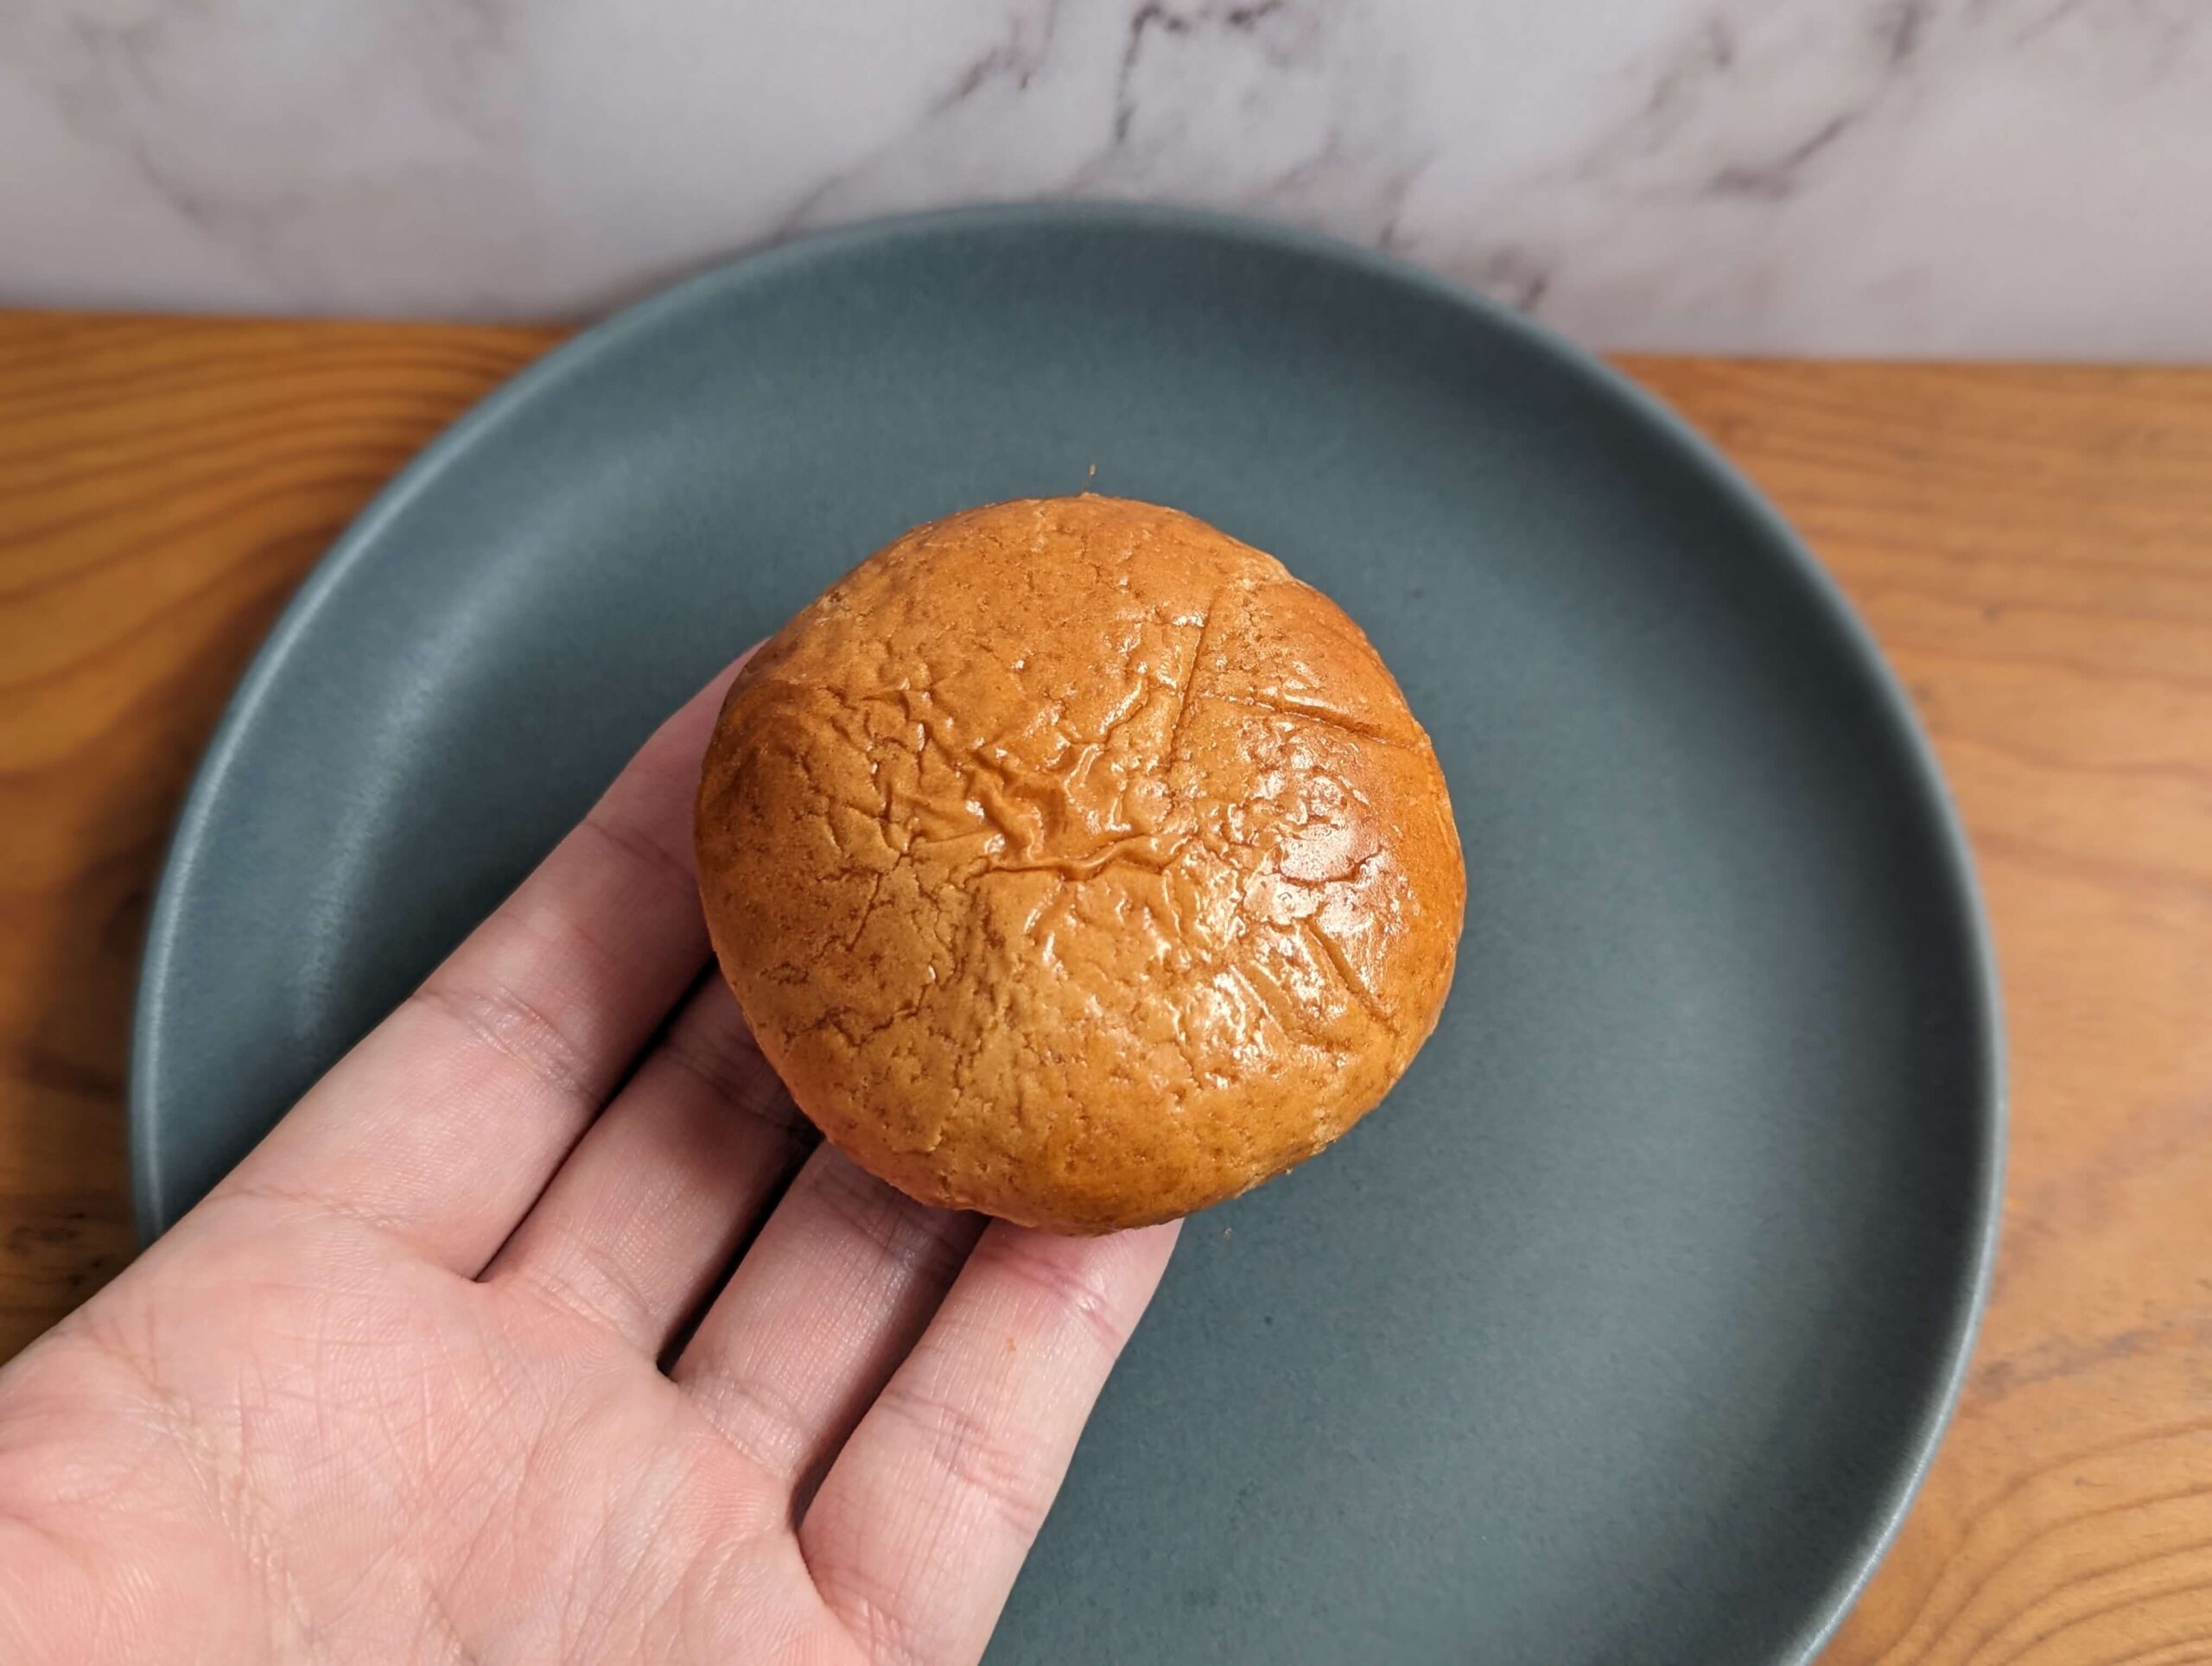 山崎製パンの「3種のチーズ焼饅頭」